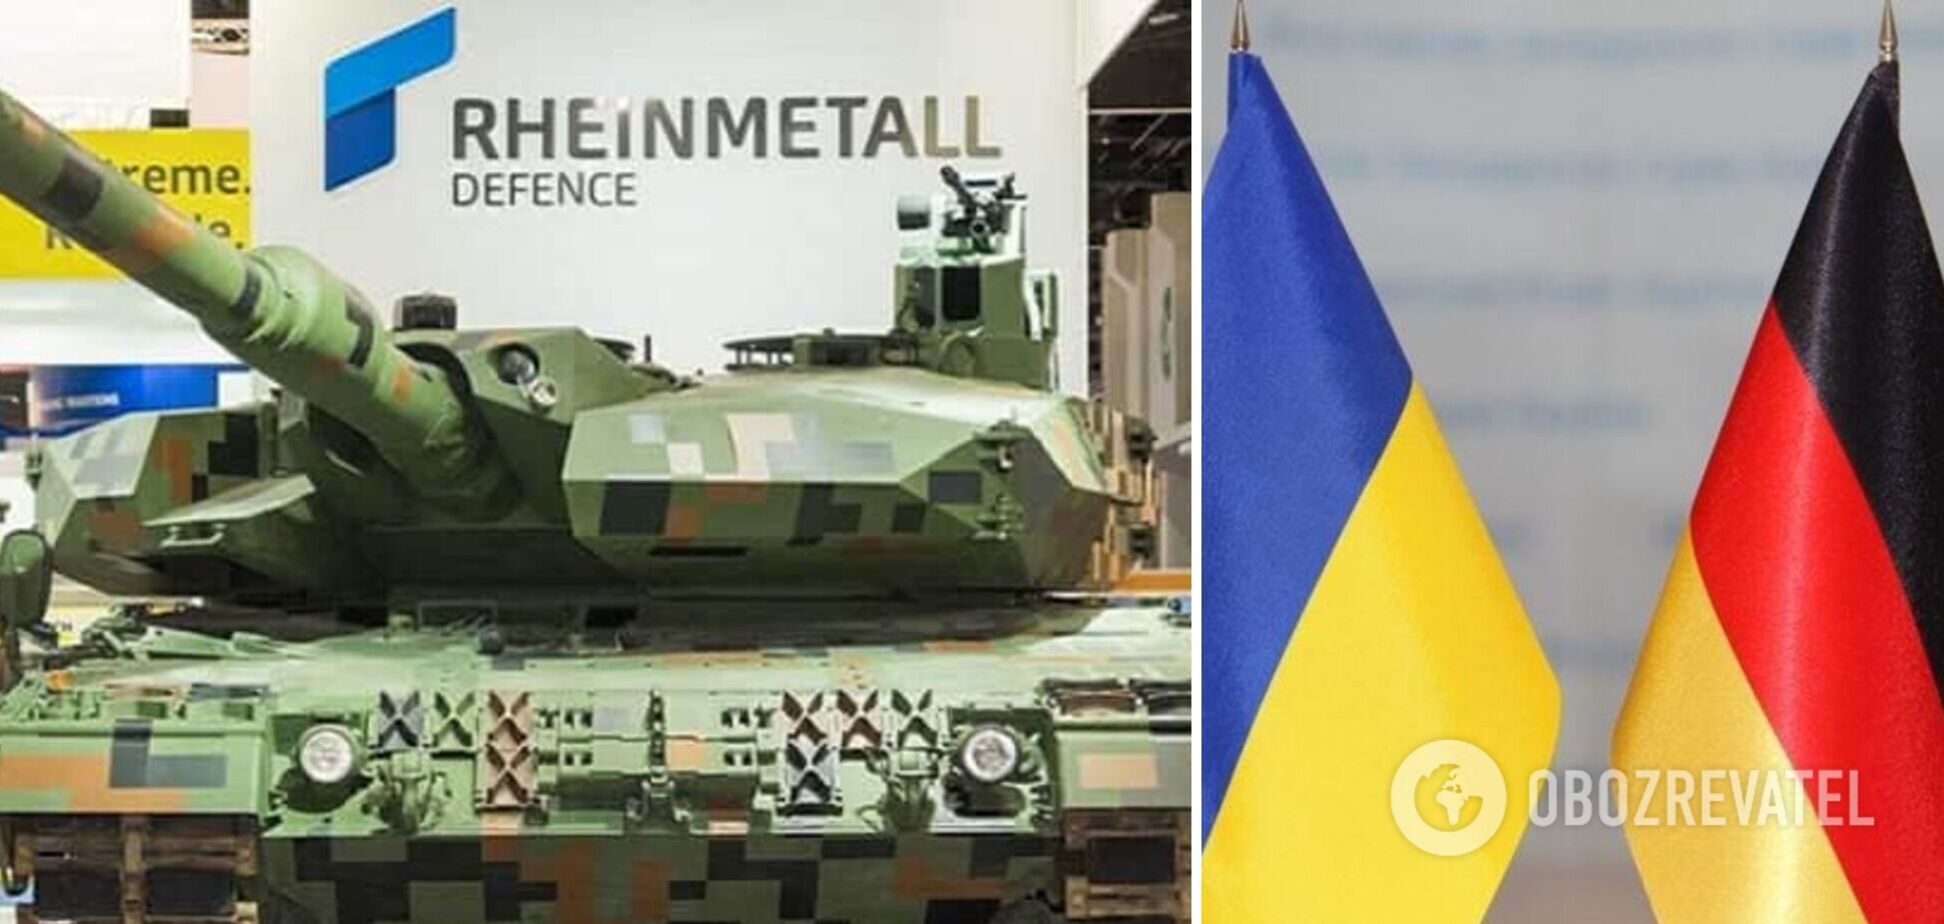 Правительство Германии разрешило Rheinmetall создать совместное оборонное предприятие с Украиной.